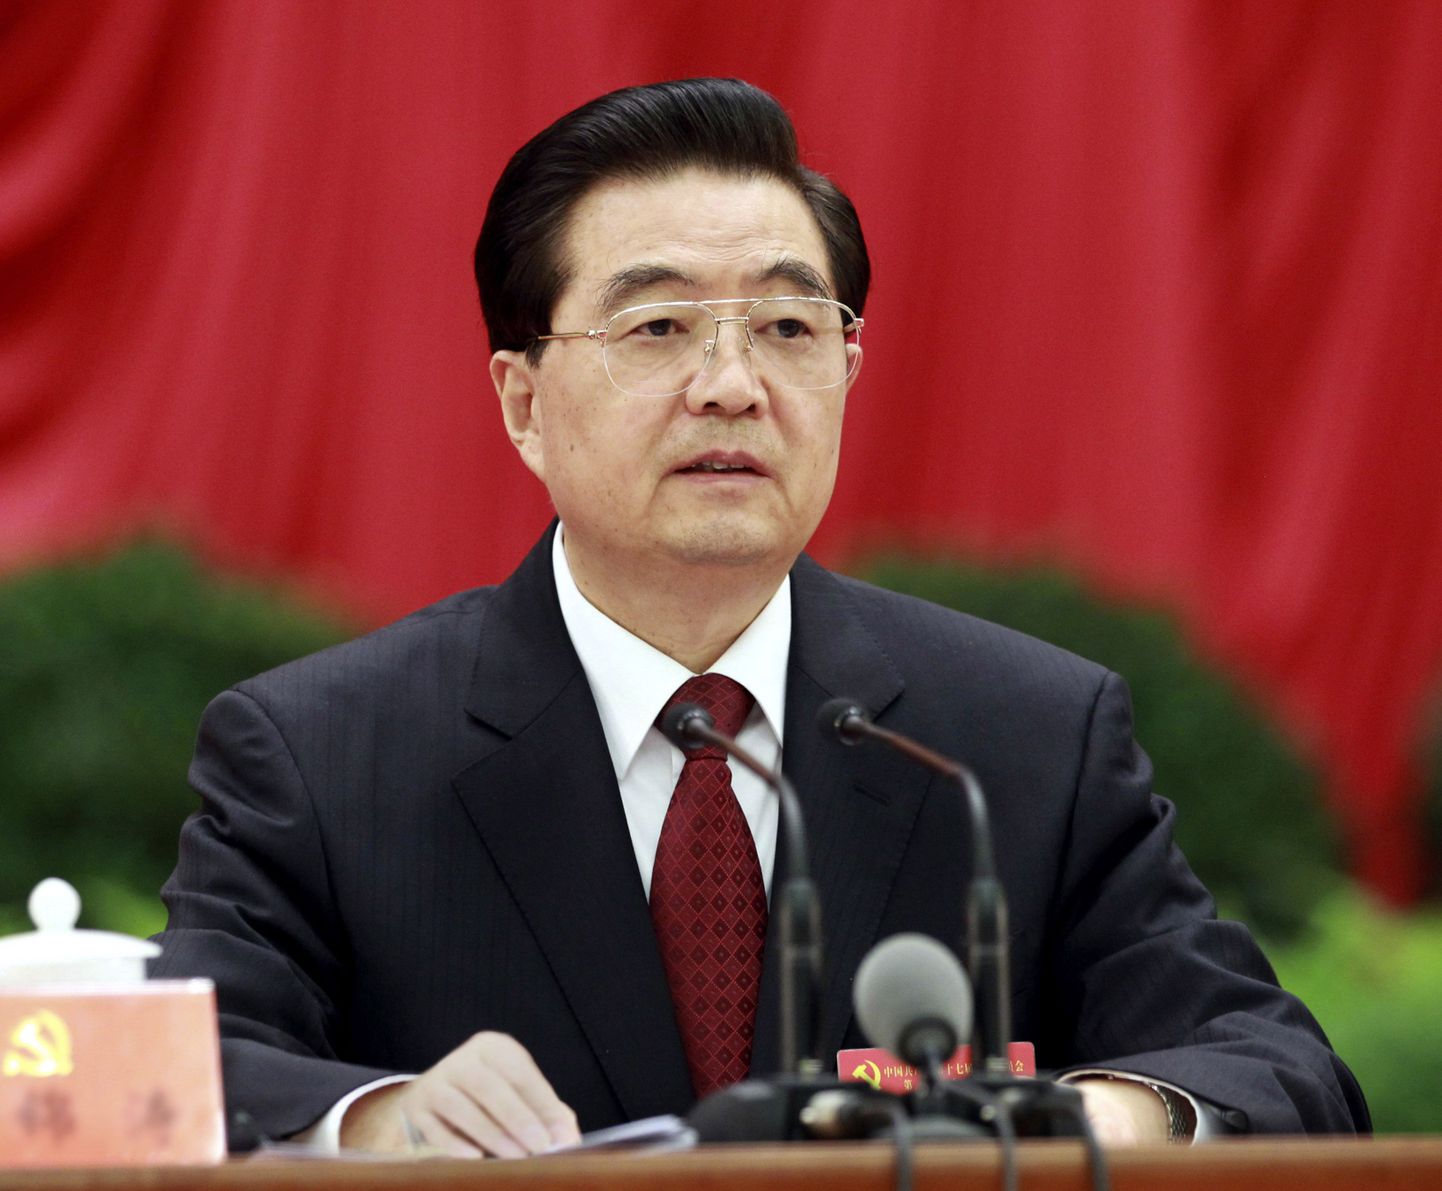 Hiina president Hu Jintao.